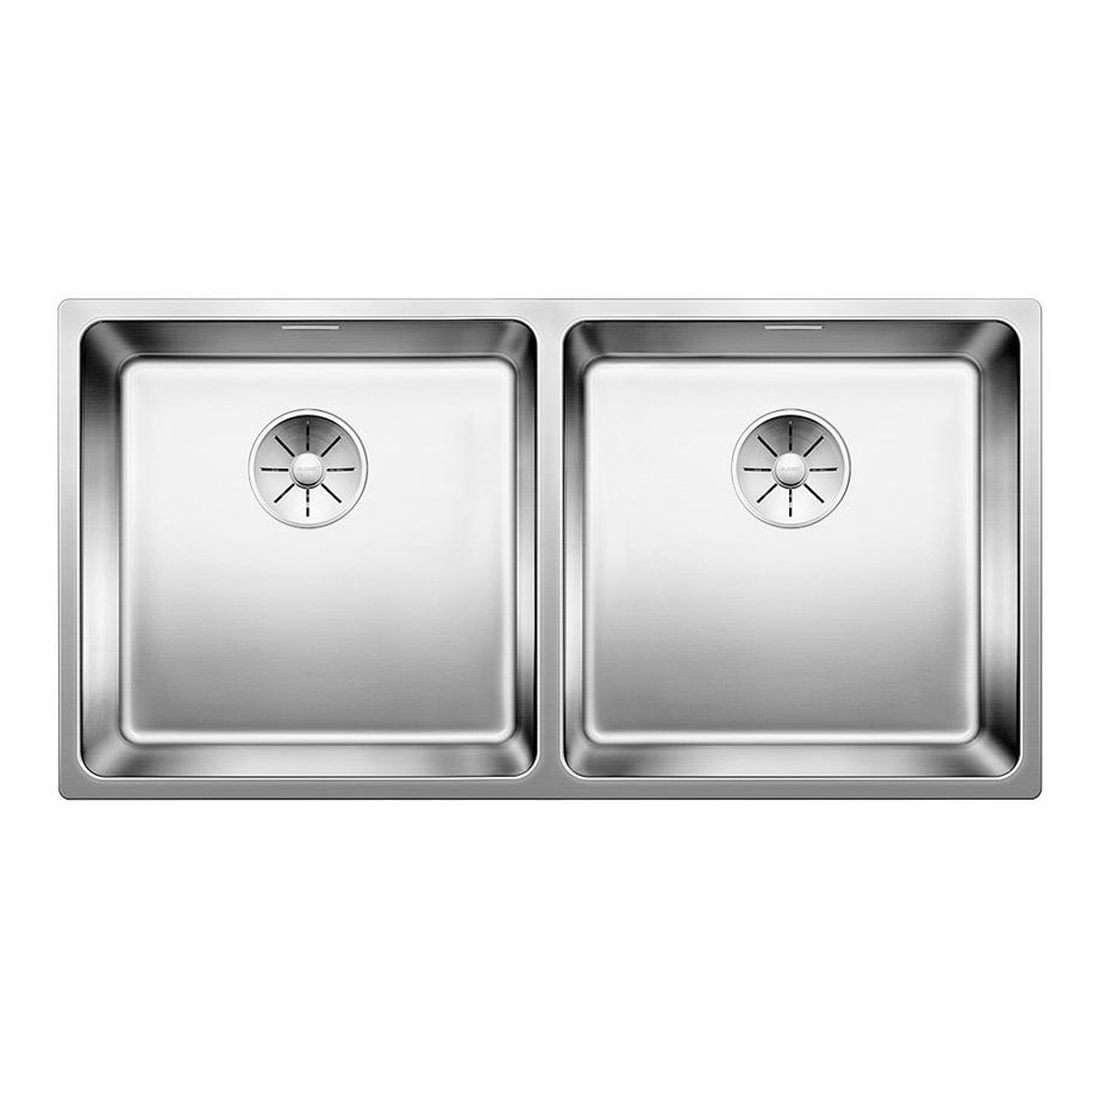 Кухонная мойка Blanco Andano 400/400-IF полированная сталь кухонная мойка franke 127 0688 779 нержавеющая сталь